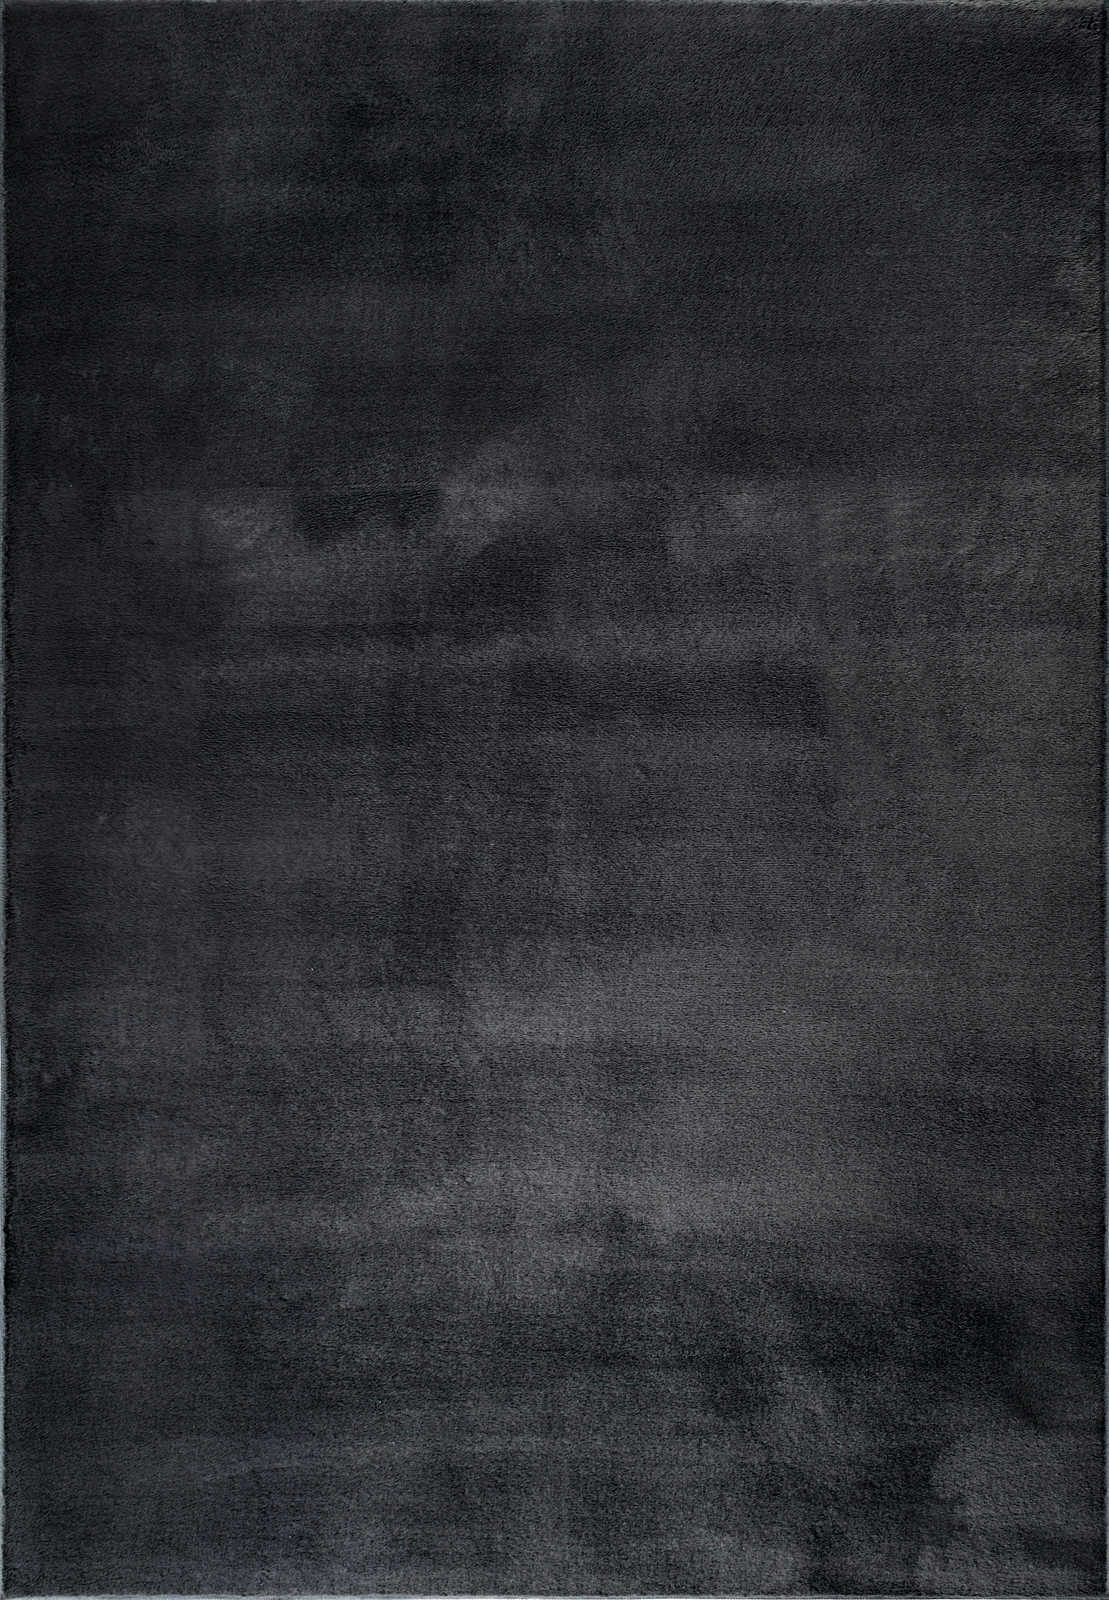             Tapis moelleux à poils longs noir - 160 x 117 cm
        